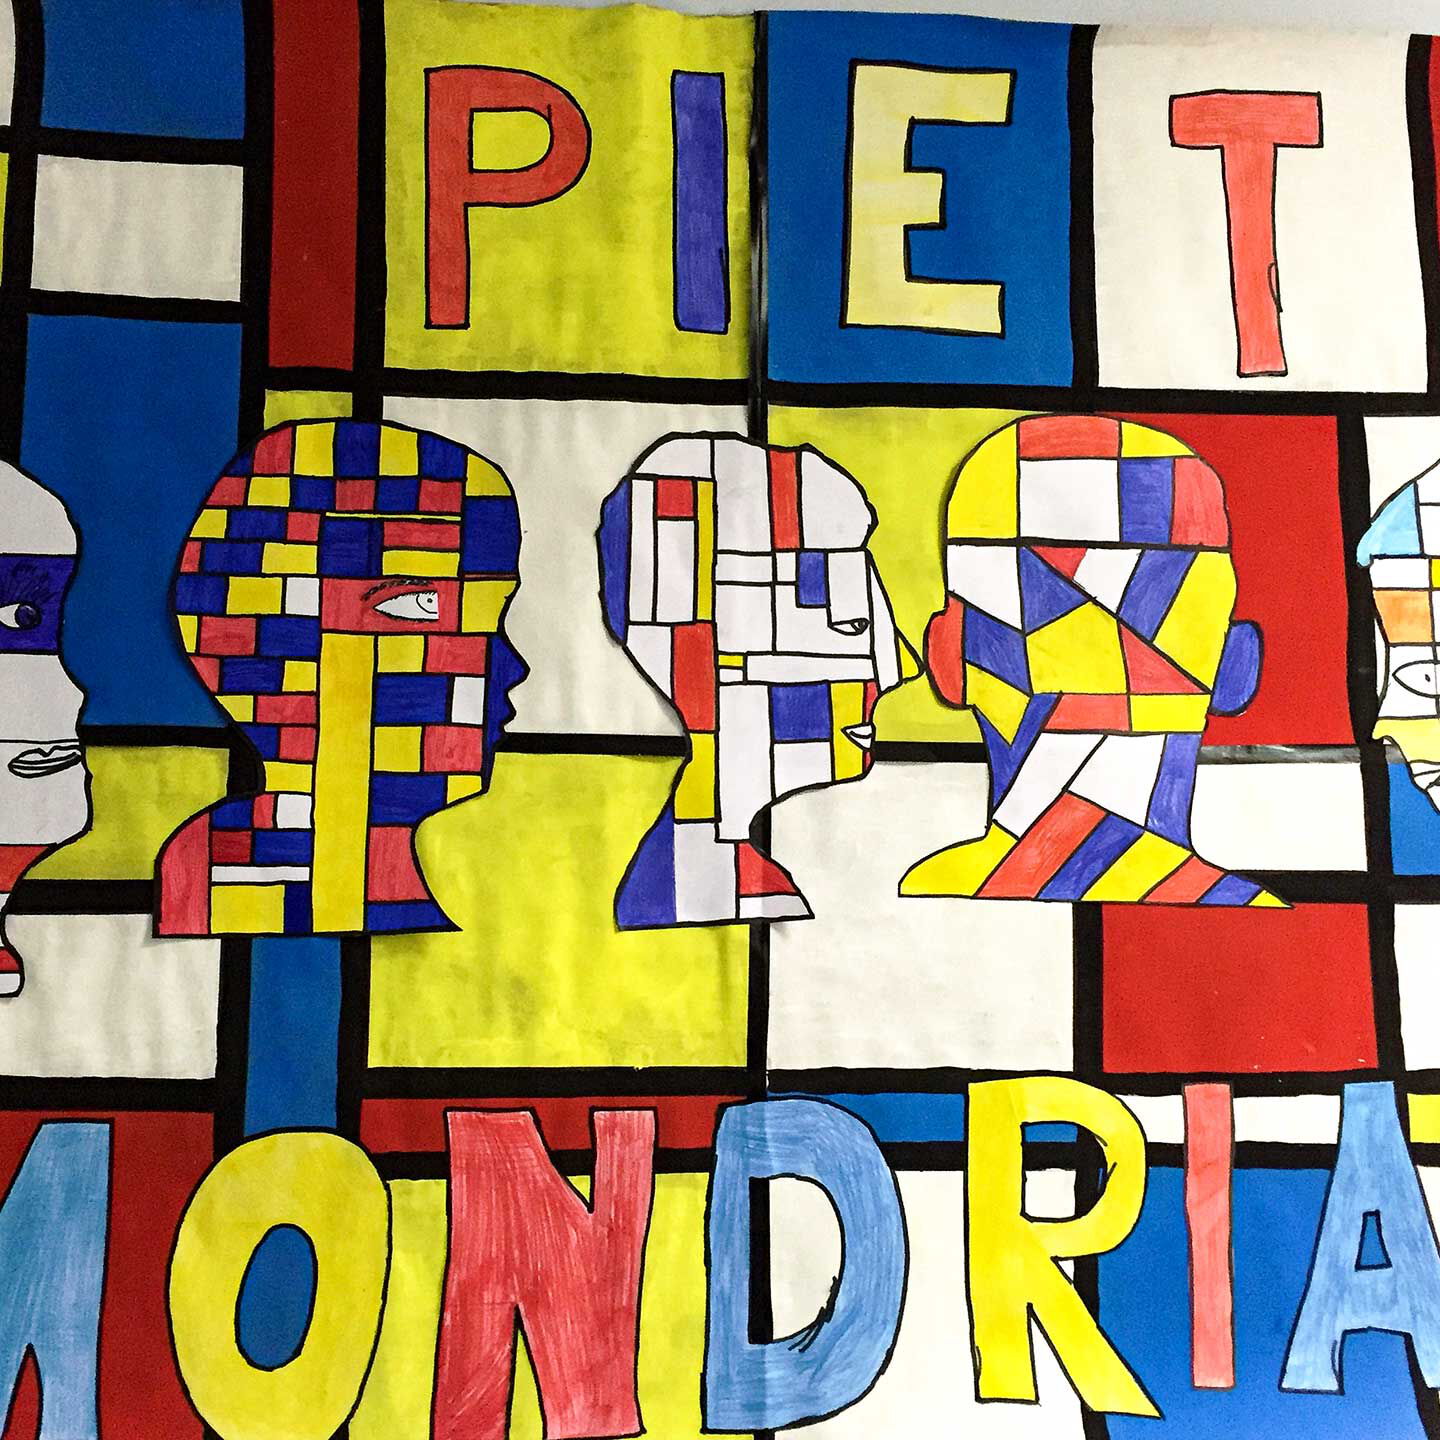 Ein Bild von Piet Mondrian mit bunten Farben, Formen und Gesichtern.